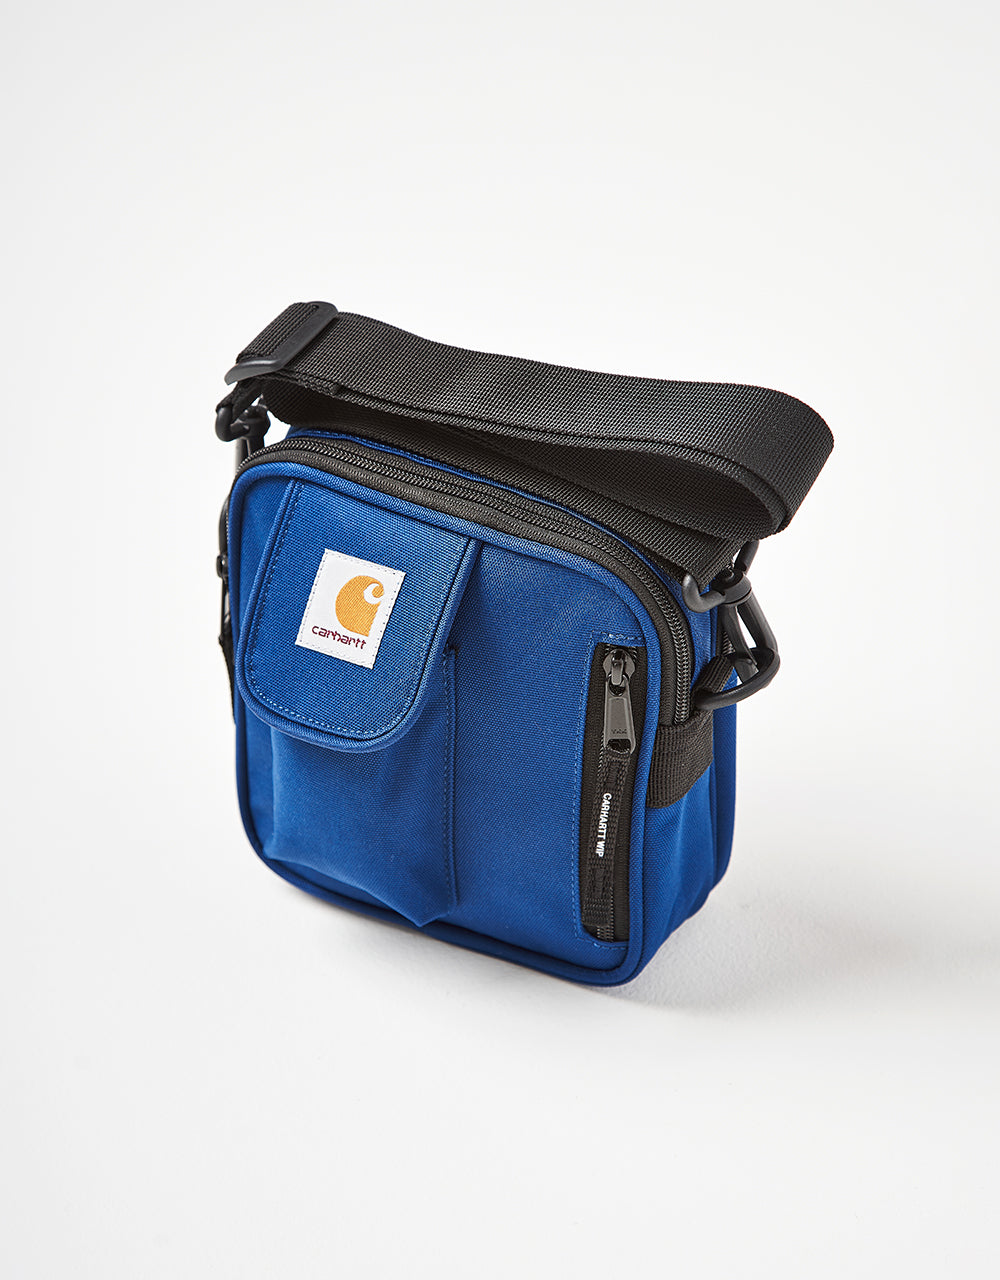 Carhartt WIP Essentials Cross Body Bag - Elder